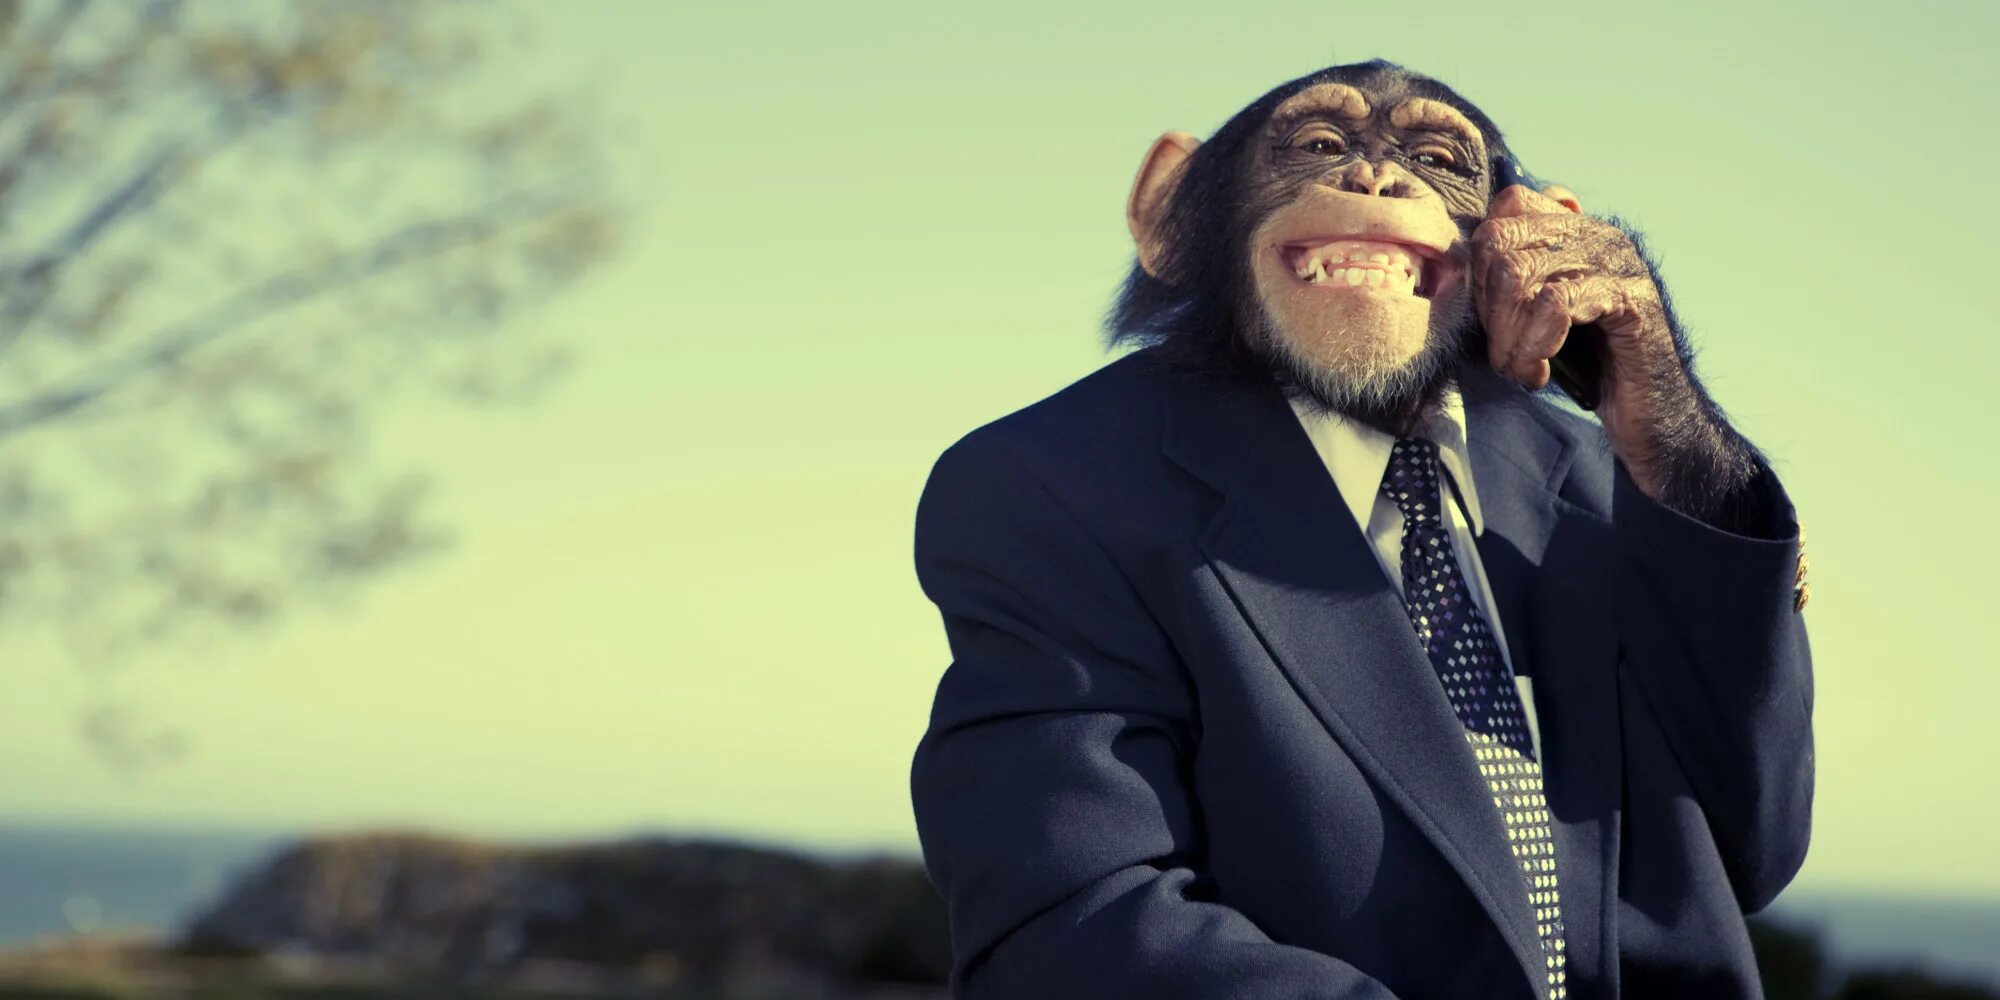 Мужчина обезьяна любовь. Обезьяна в пиджаке. Обезьяна в галстуке. Костюм обезьянка. Robert обезьяна.